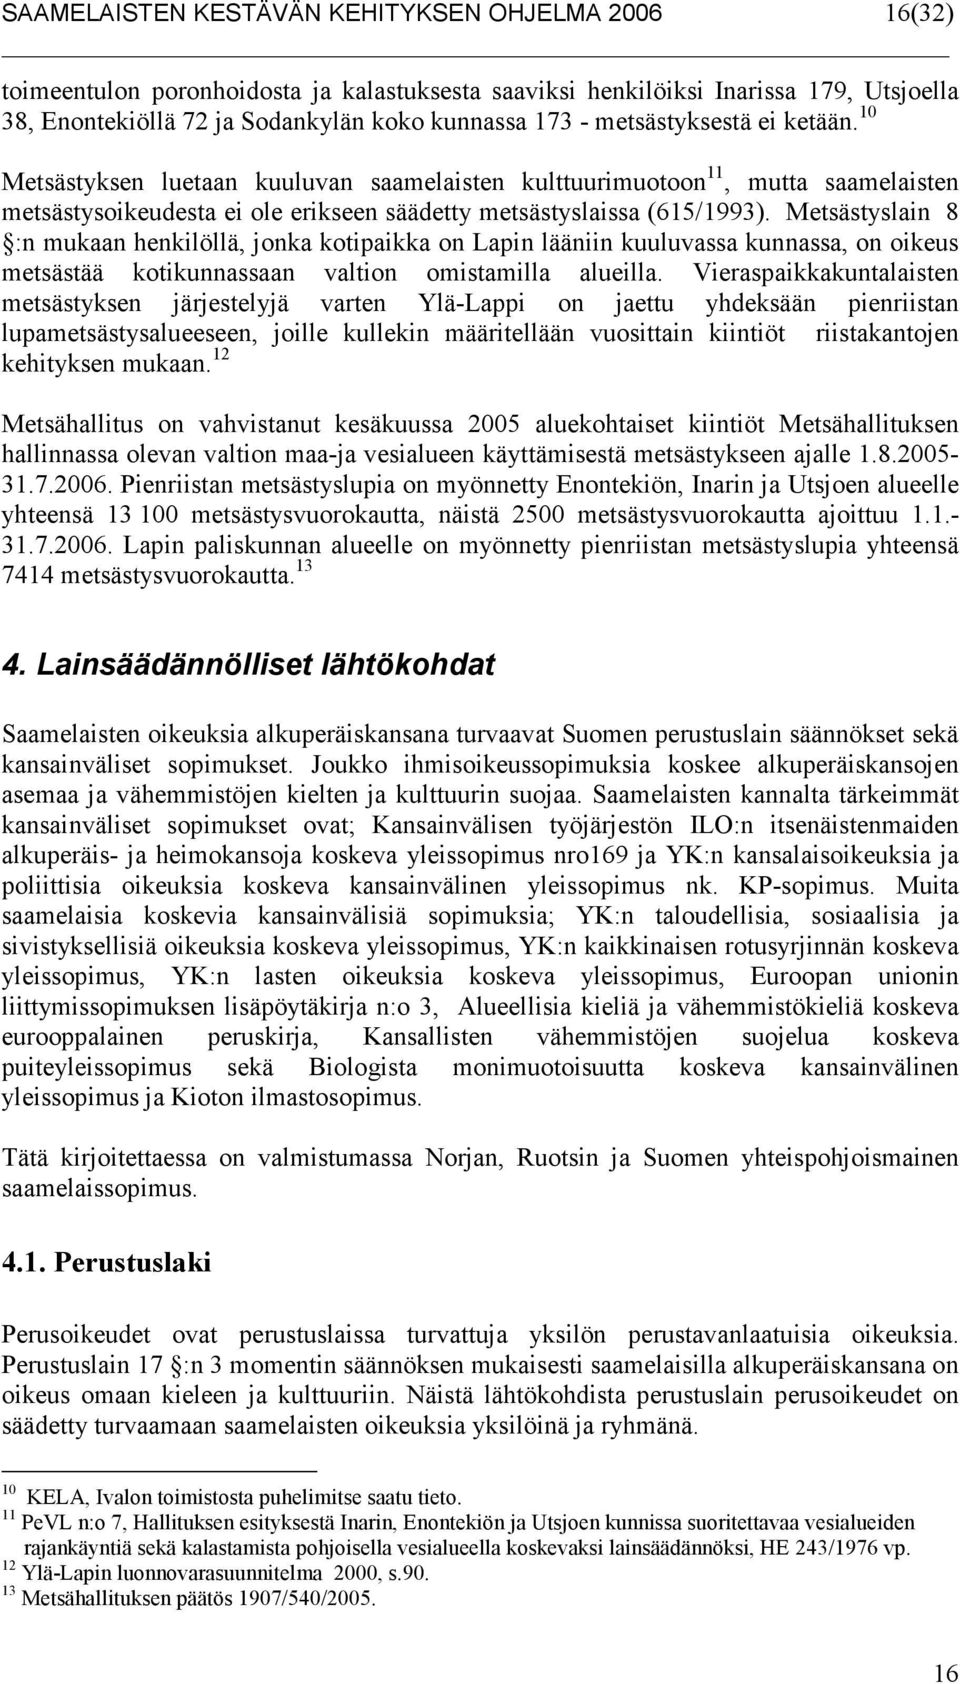 Metsästyslain 8 :n mukaan henkilöllä, jonka kotipaikka on Lapin lääniin kuuluvassa kunnassa, on oikeus metsästää kotikunnassaan valtion omistamilla alueilla.